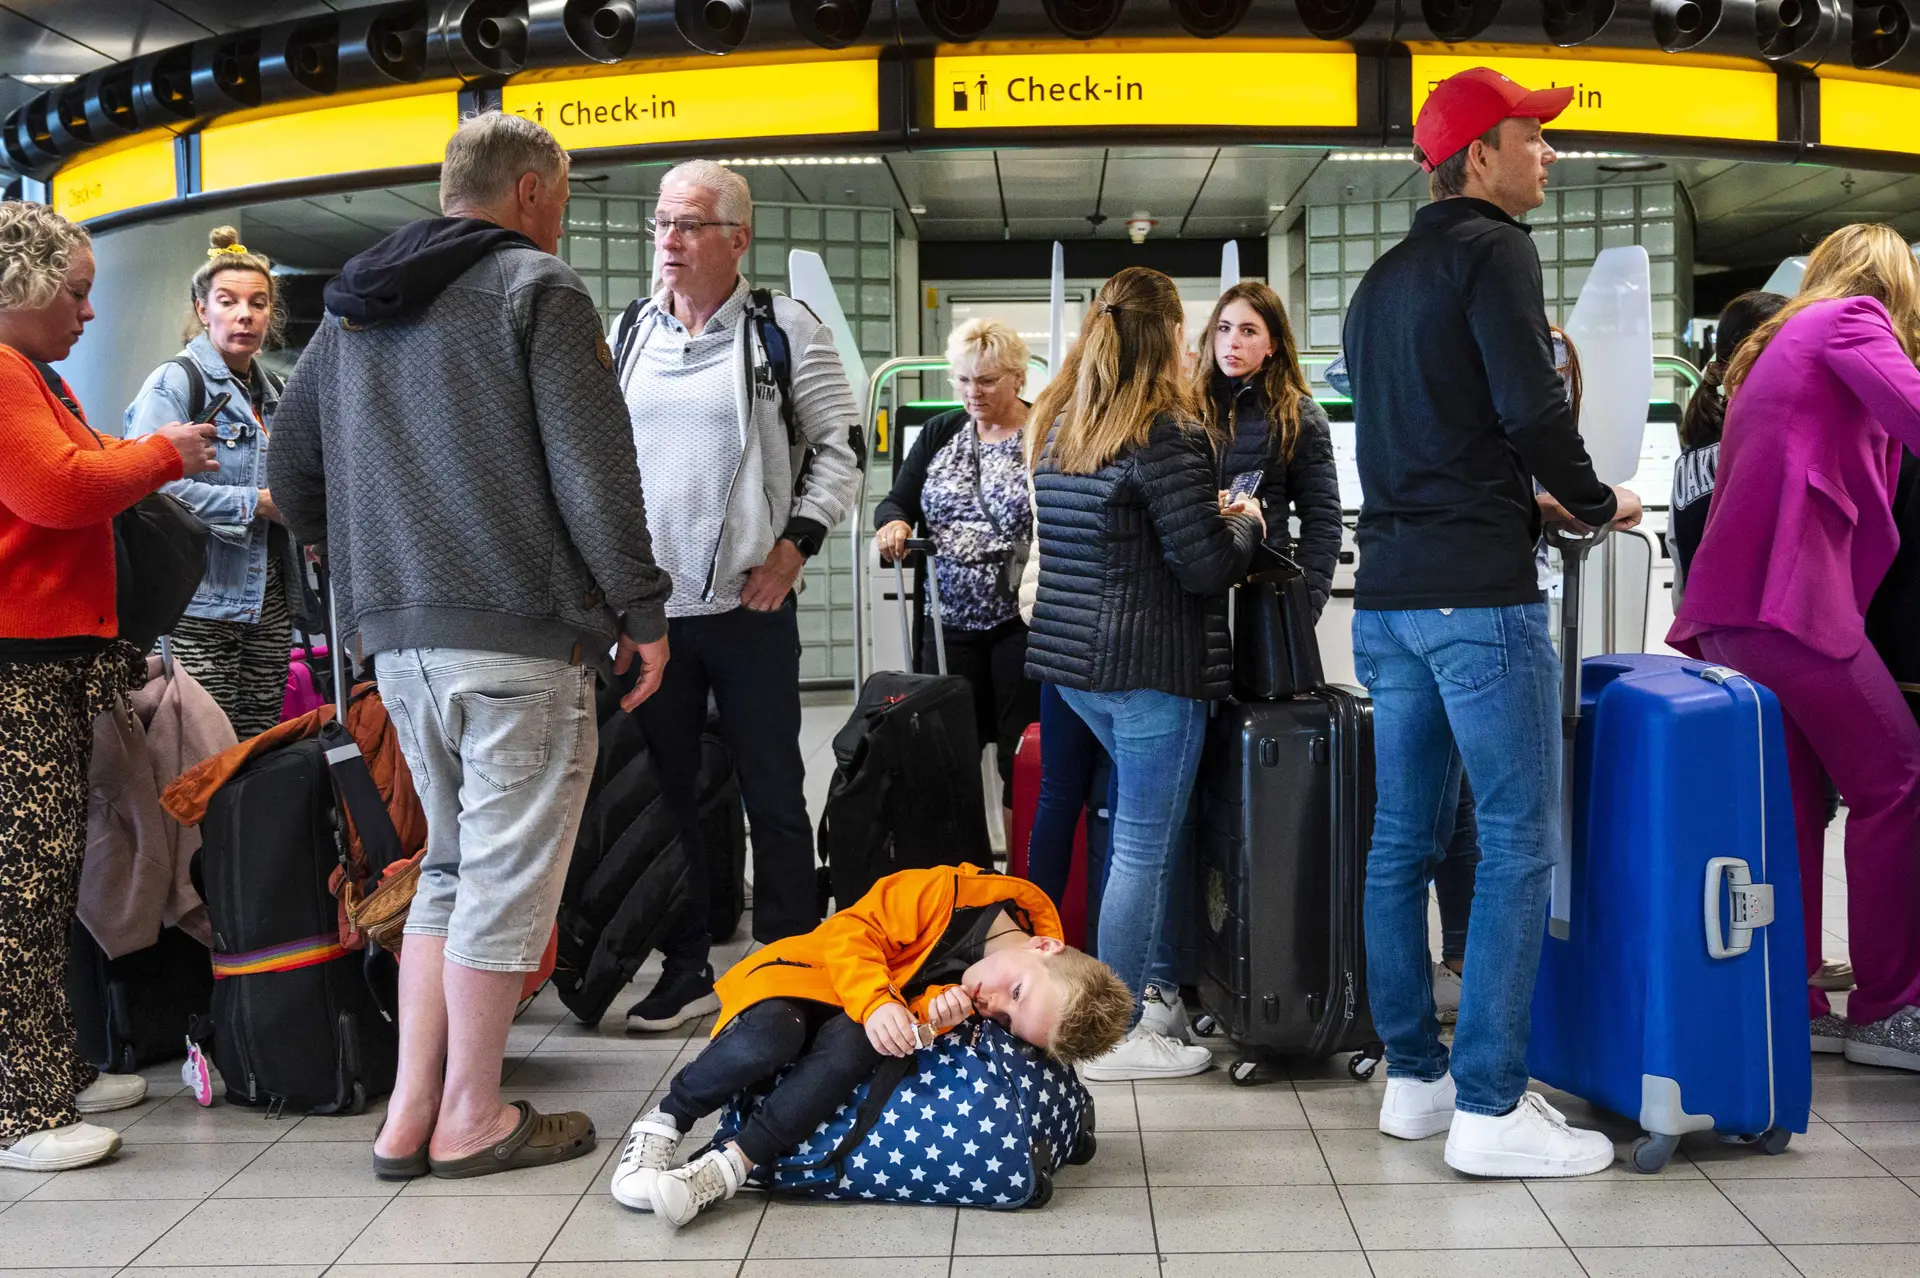 Aeroporto de Amesterdão reembolsa passageiros que perderam voos devido às longas filas